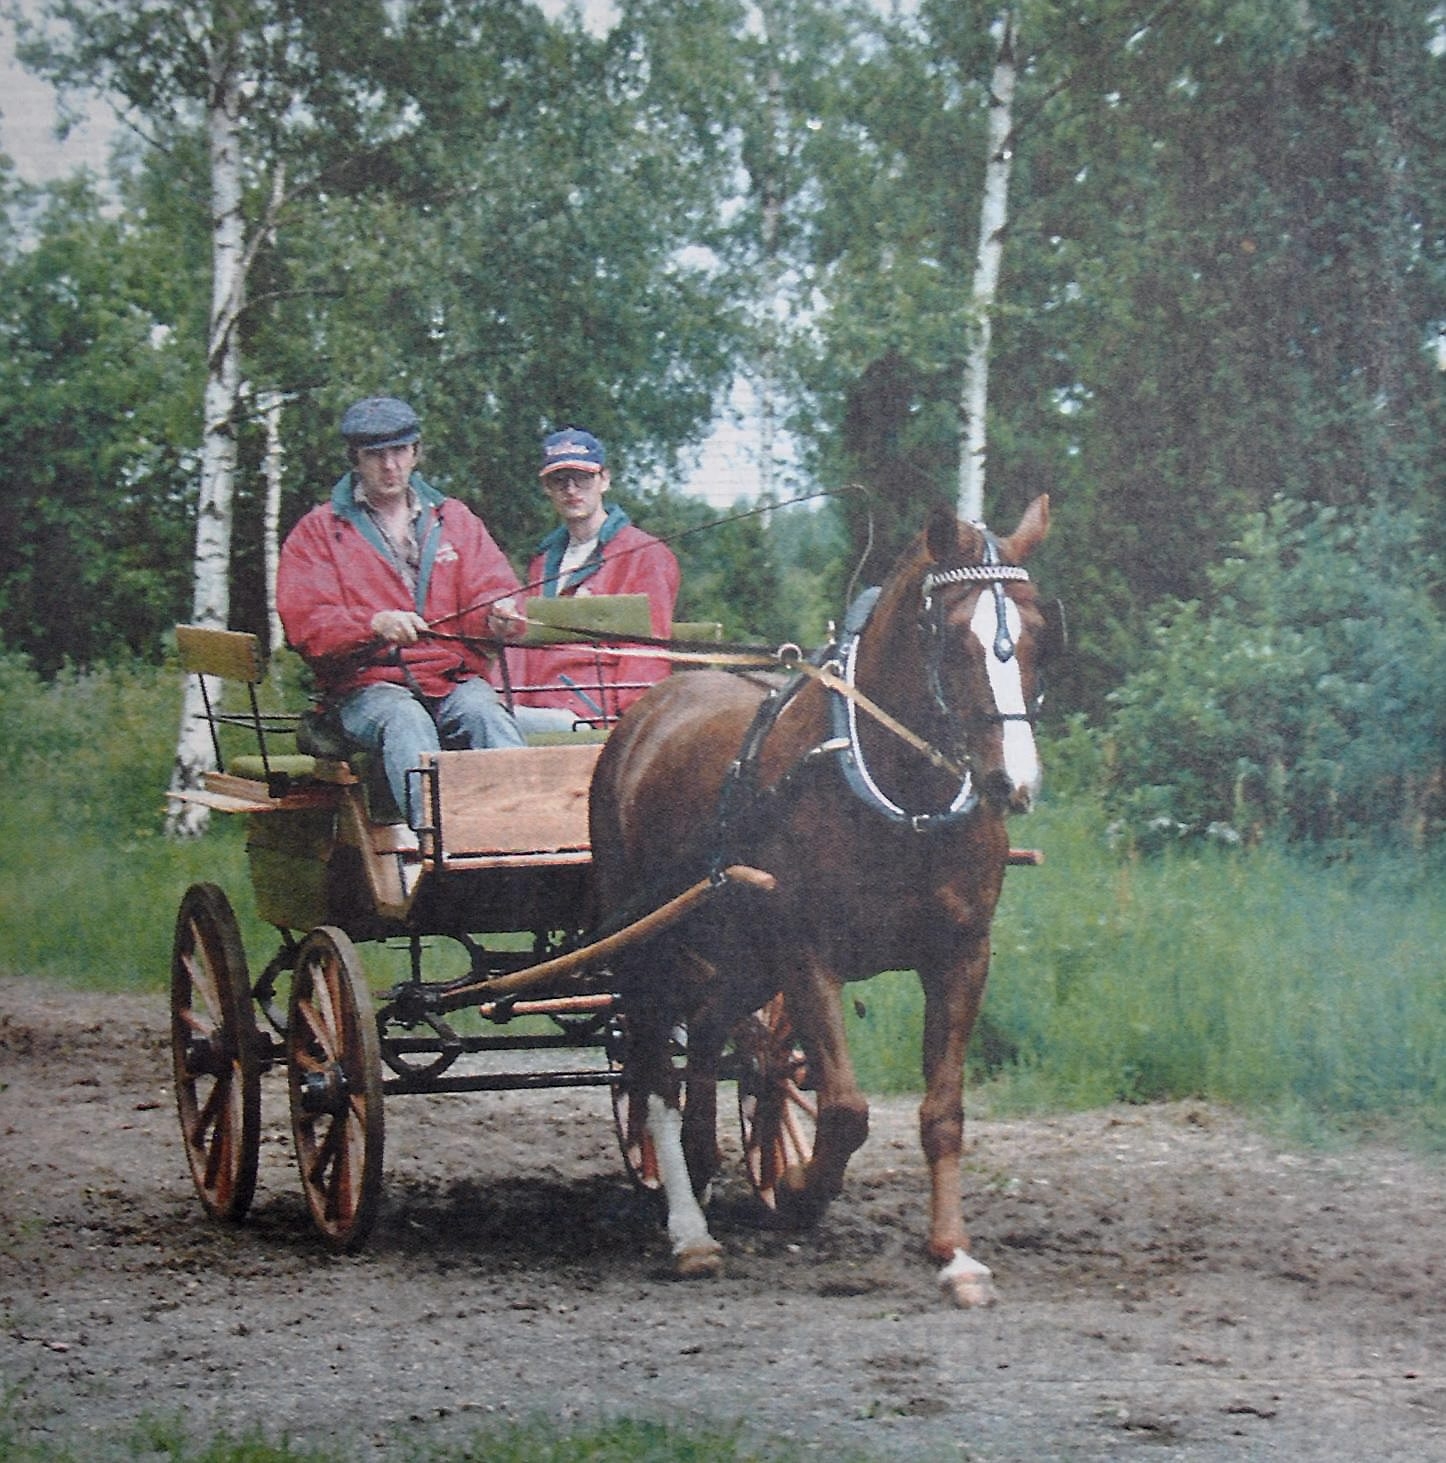 Knut och Tony Andersson på väg att lotsa Don Pedro genom scouthindret på banan i Vinslöv.
Arkiv: Åke Ljungberg